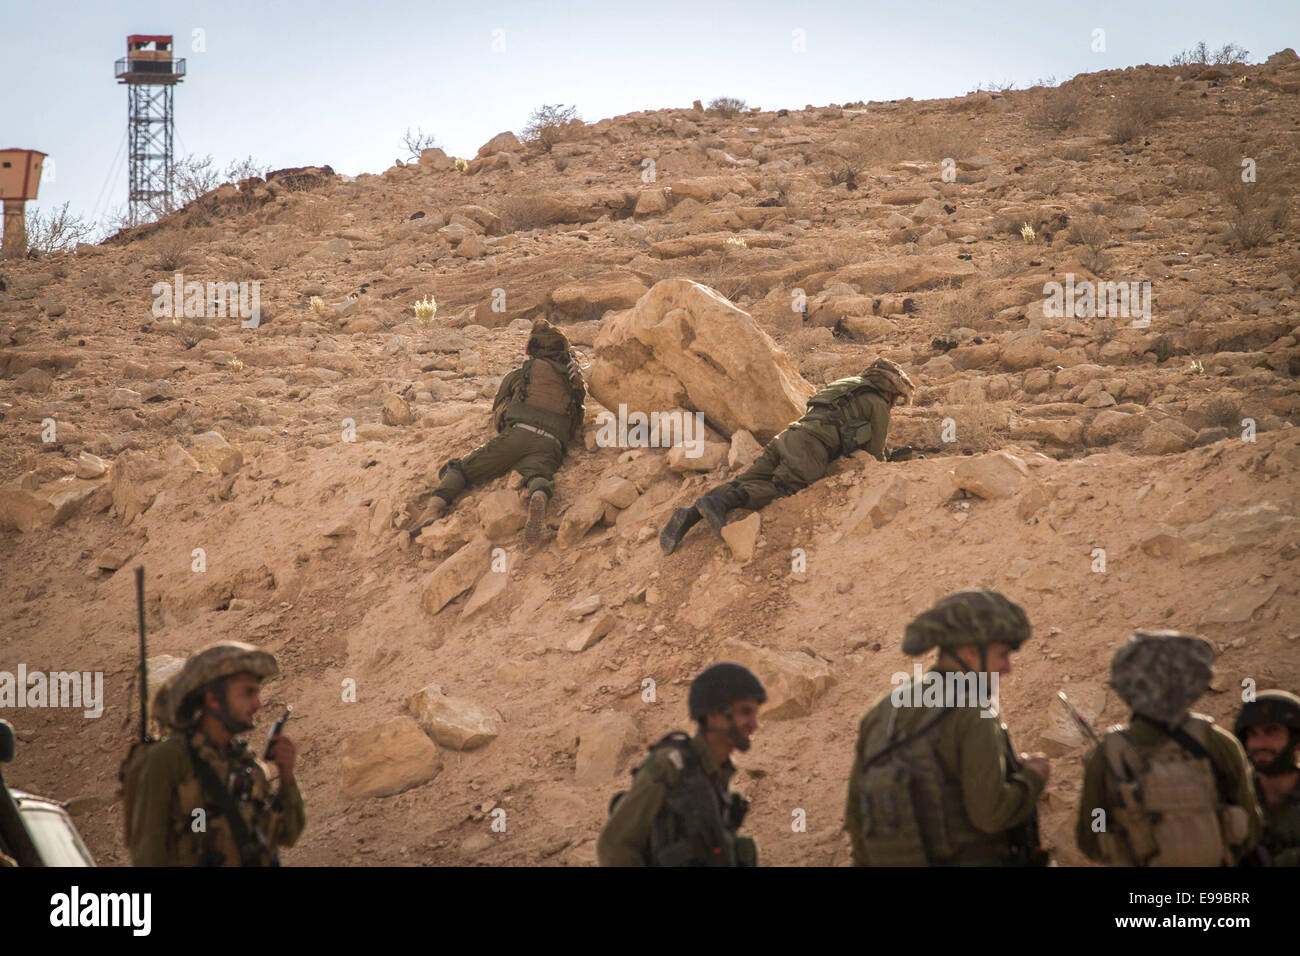 Gerusalemme. 22 ottobre, 2014. Soldati israeliani sostare vicino Israele ed Egitto confine, Ott. 22, 2014. Due soldati israeliani sono stati feriti in un attentato perpetrato da un Sinai basata su gruppo jihadista sul confine Israeli-Egyptian mercoledì. Credito: JINI/Xinhua/Alamy Live News Foto Stock